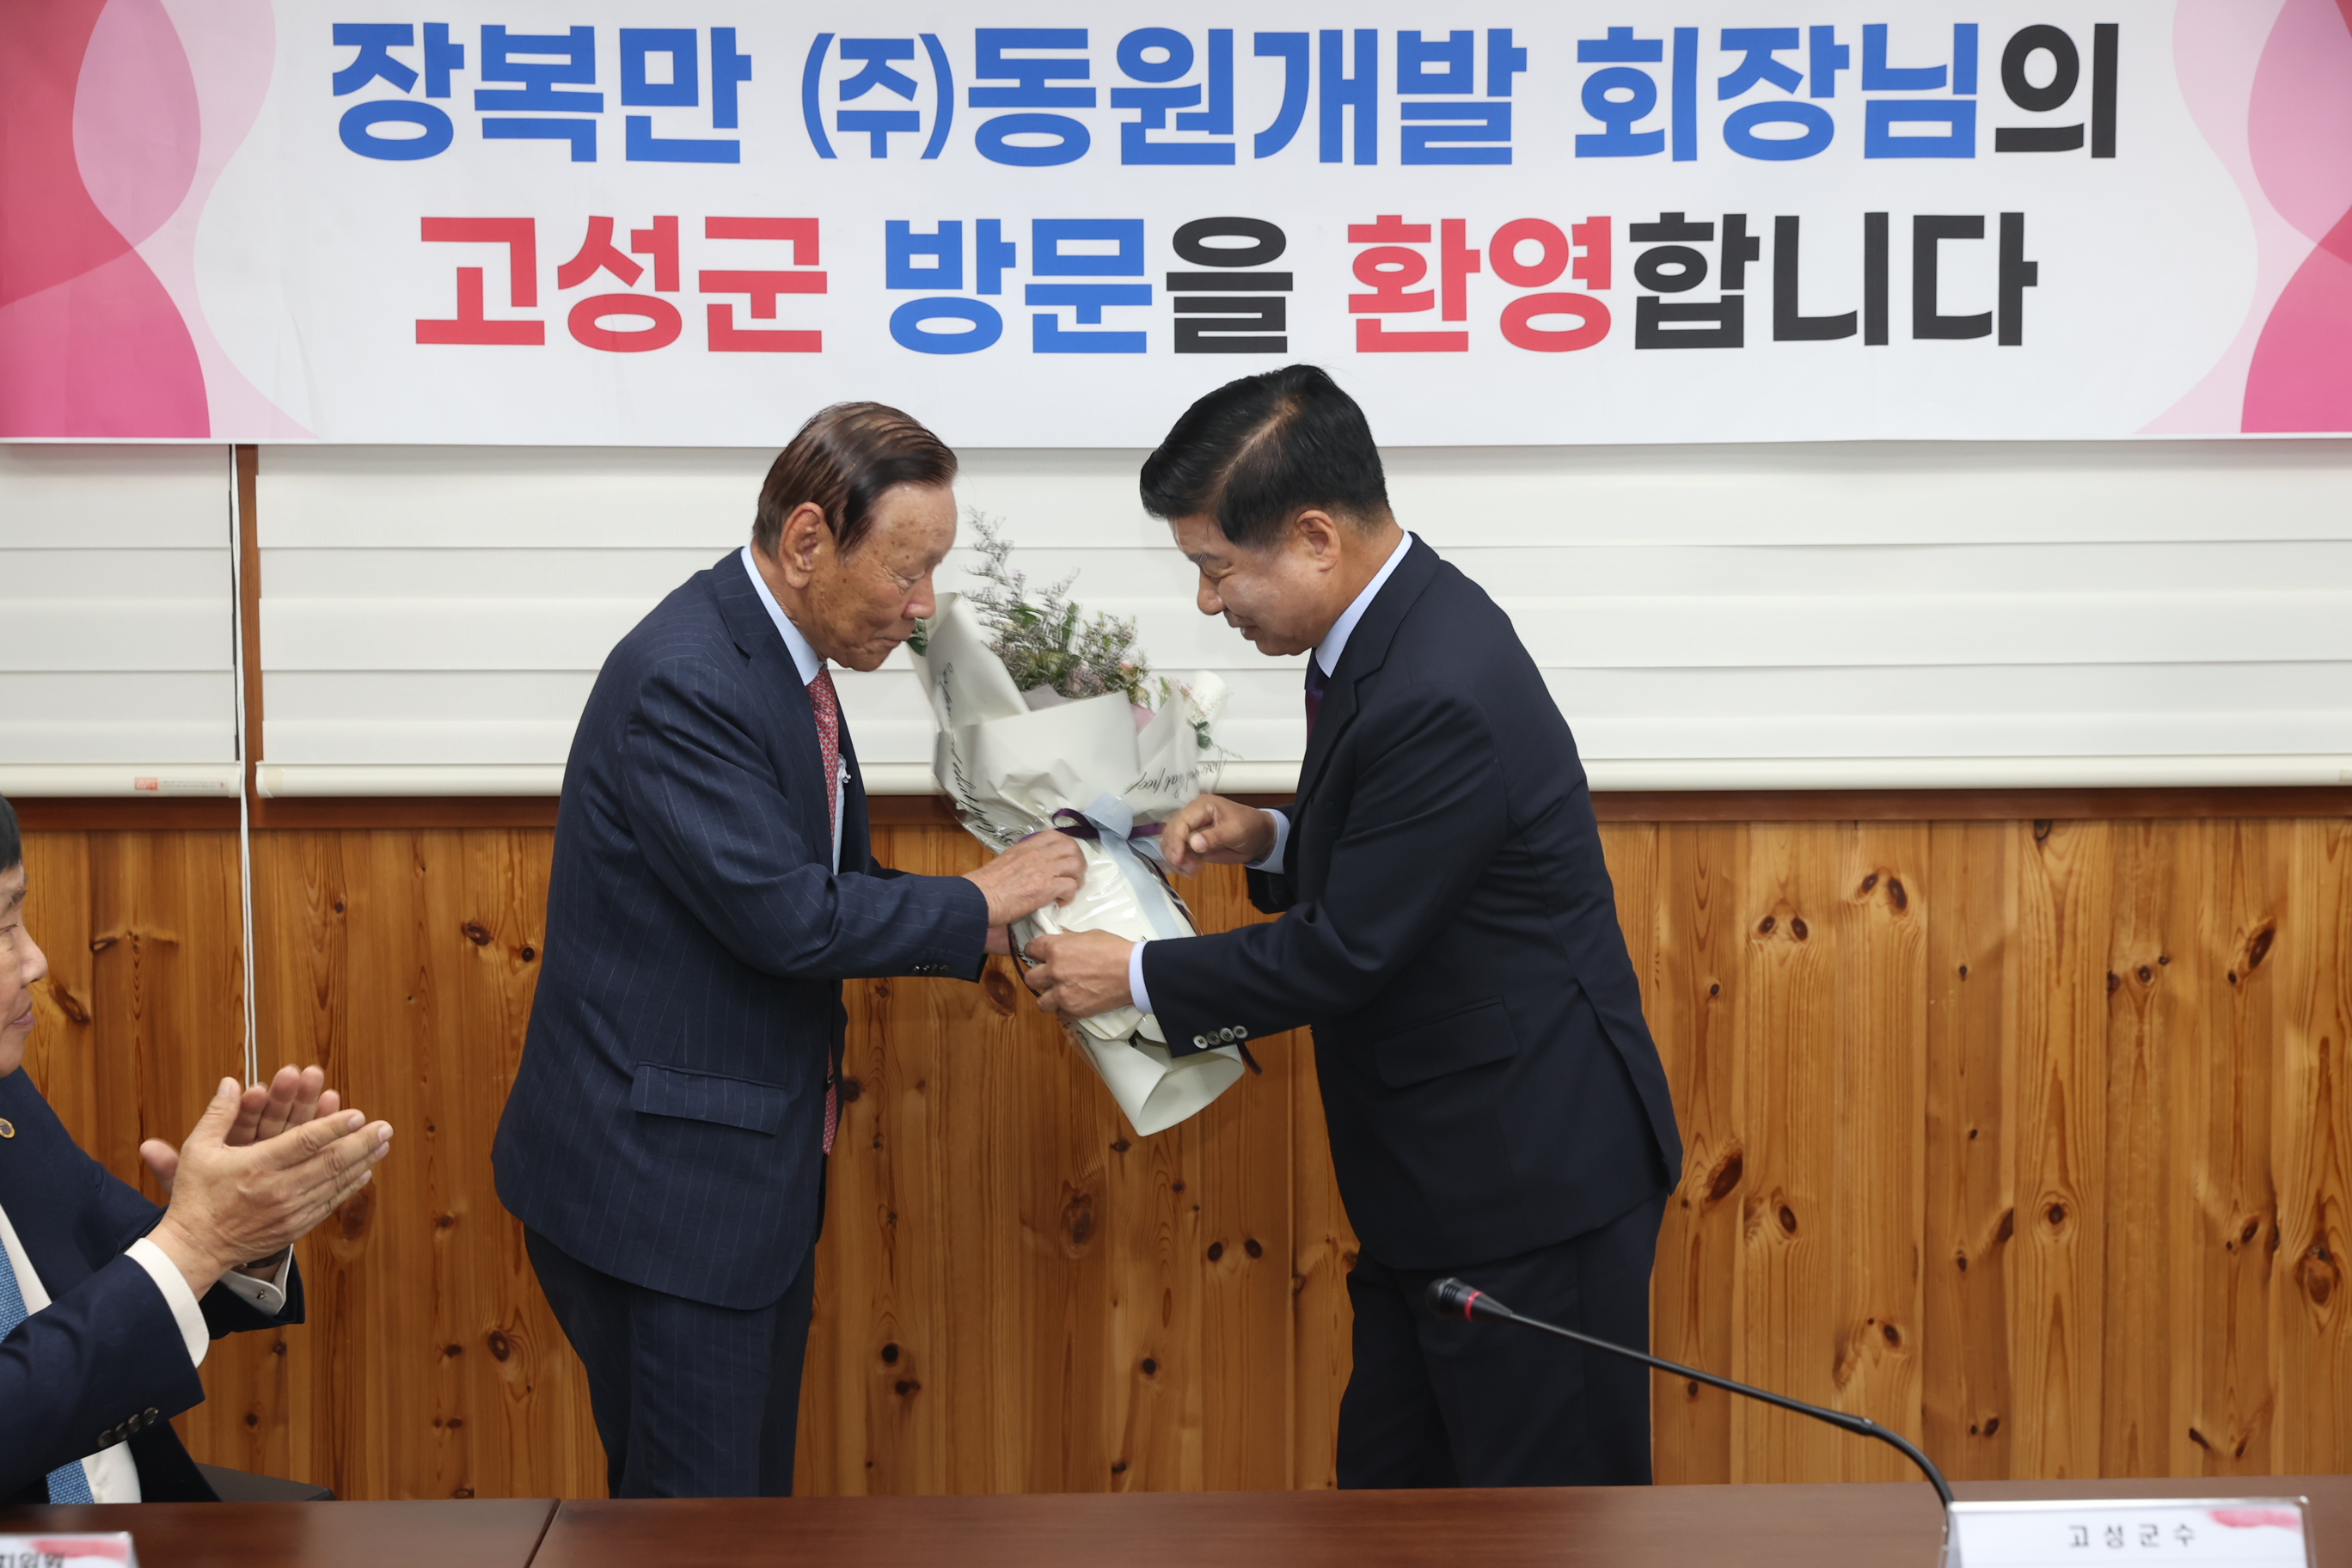 11월9일 장복만 (주)동원개발 회장님 방문 환영 관련자료